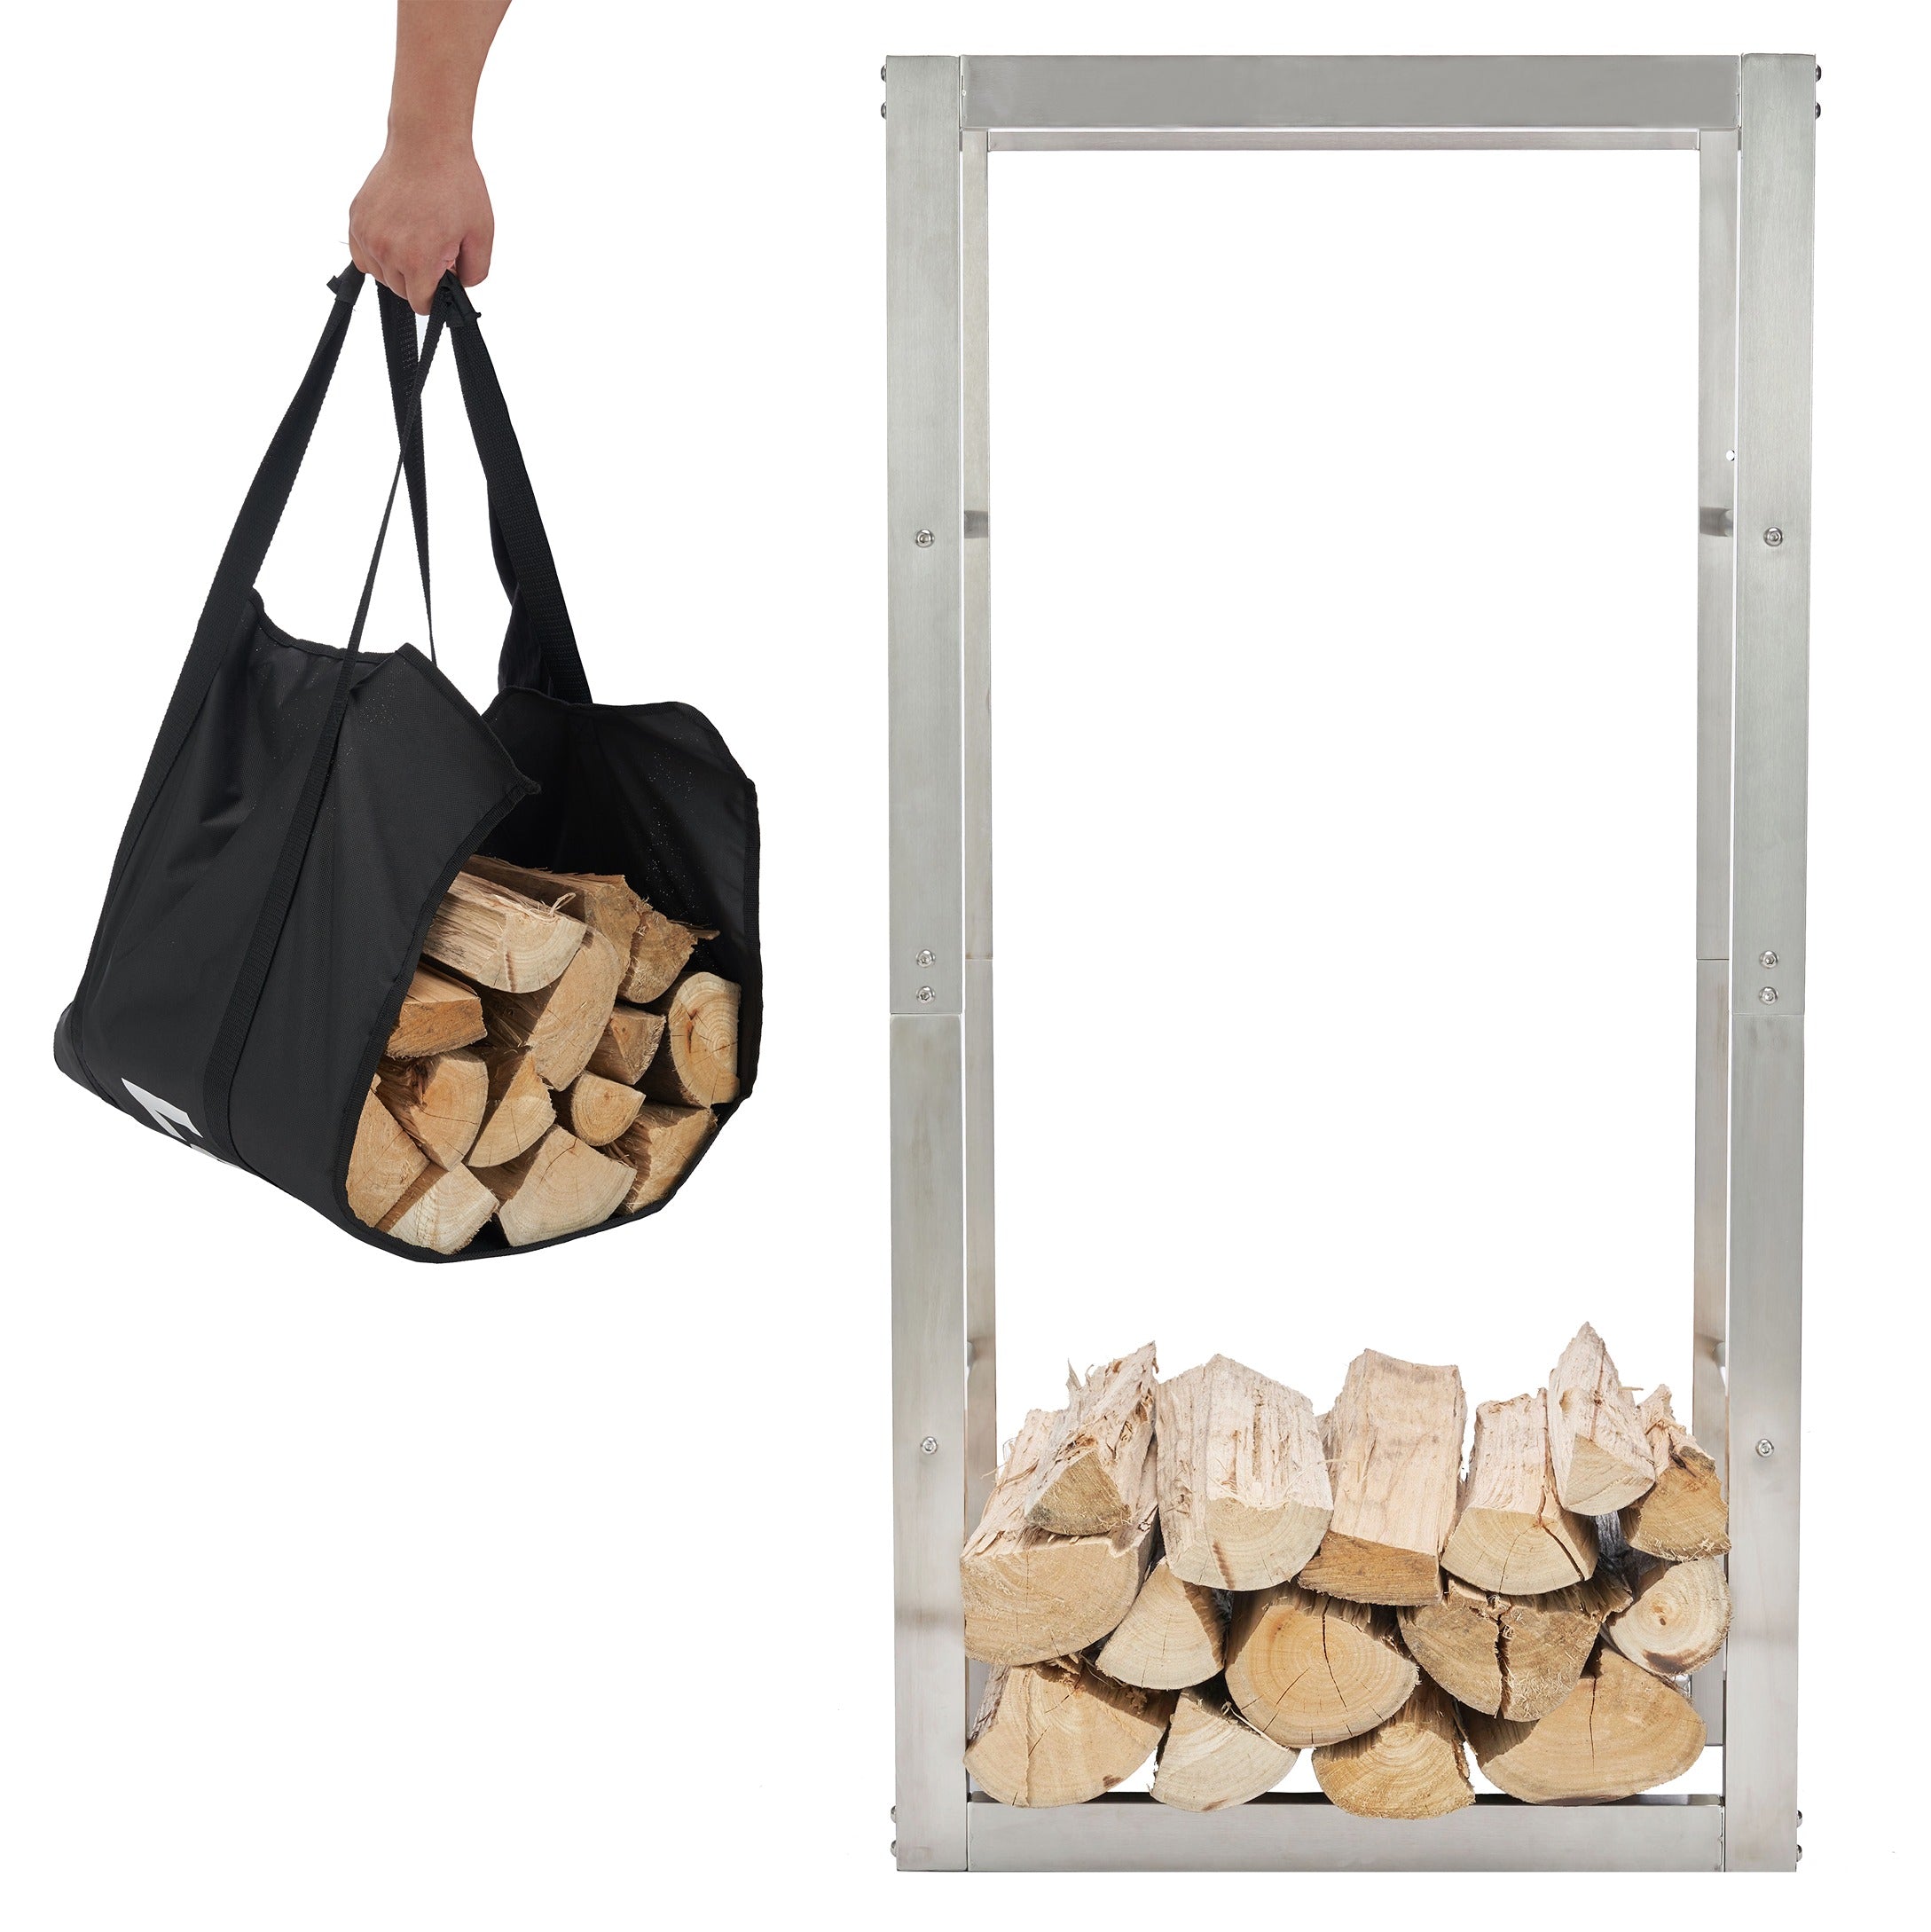 Lendo Online Support à bois de chauffage 50x25x100cm sac de transport argent acier inoxydable